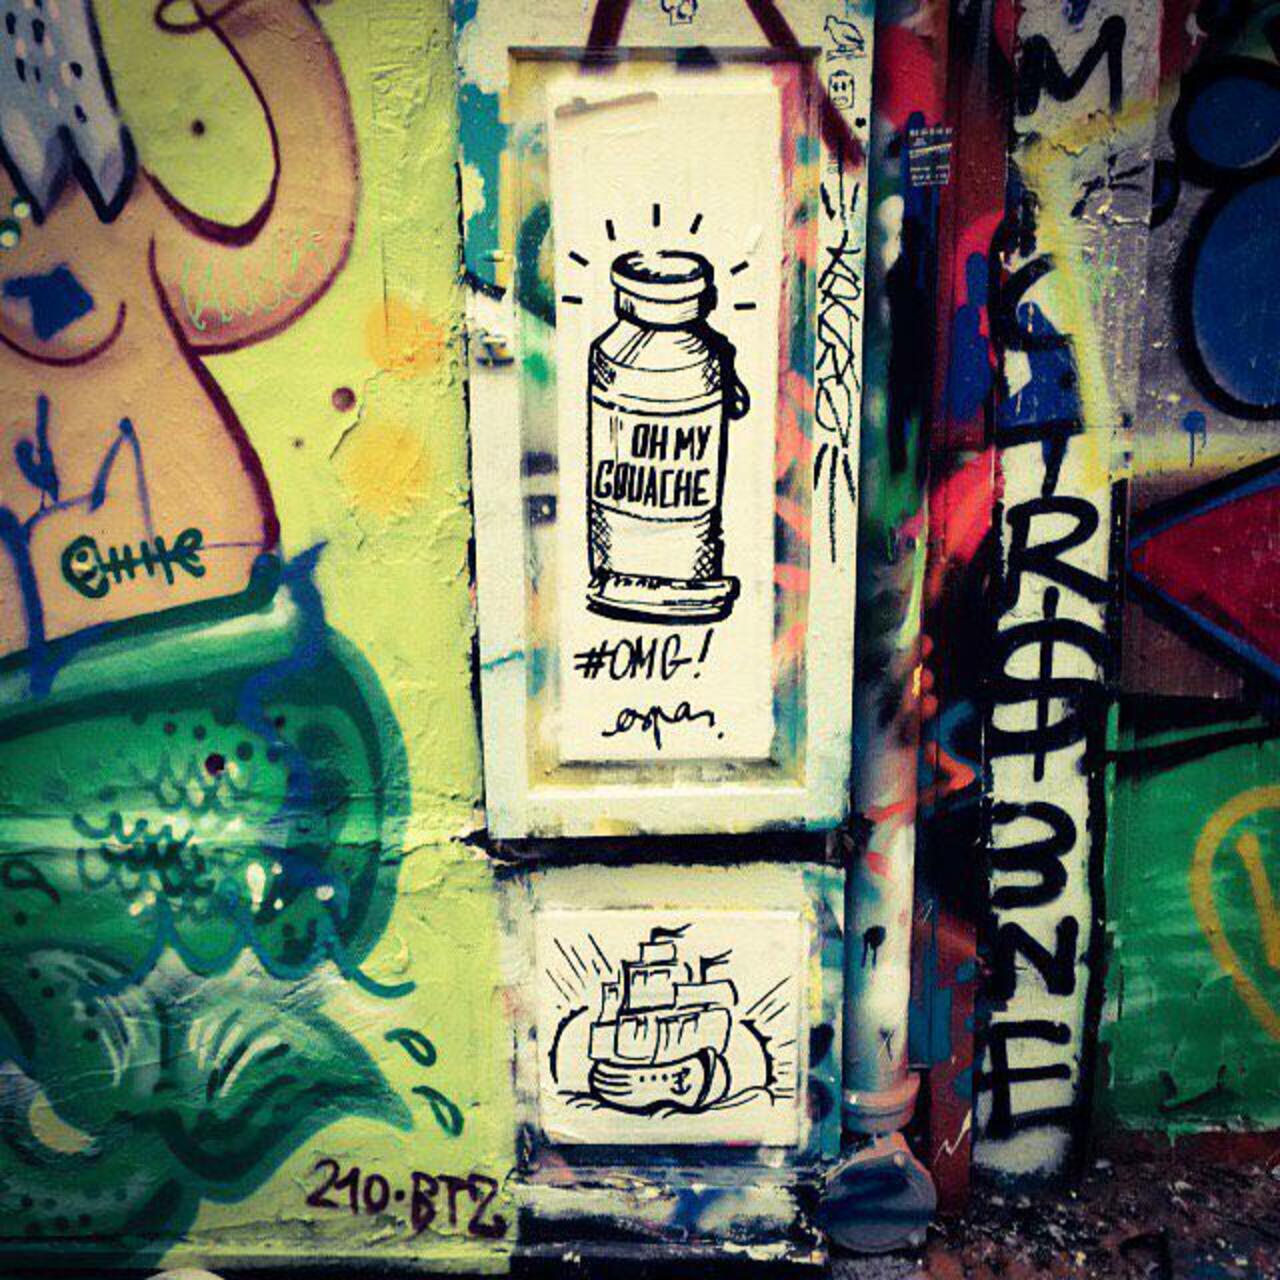 http://ift.tt/1KiqpQt #Paris #graffiti photo by art_by_espa http://ift.tt/1LJhEMV #StreetArt http://t.co/c9X5m8Kymm